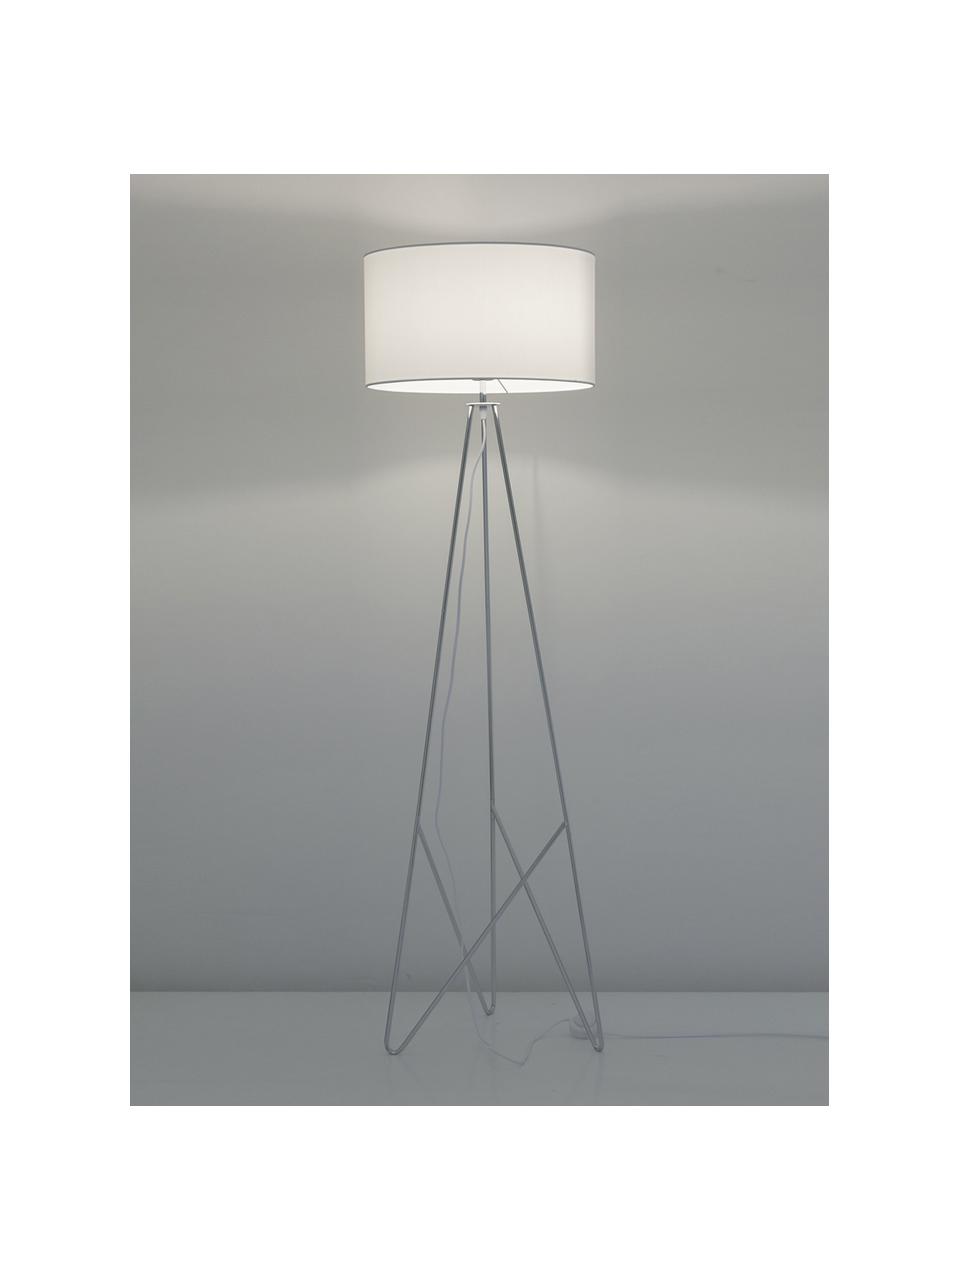 Lampa podłogowa trójnóg Jessica, Biały, chrom, Ø 45 x W 155 cm